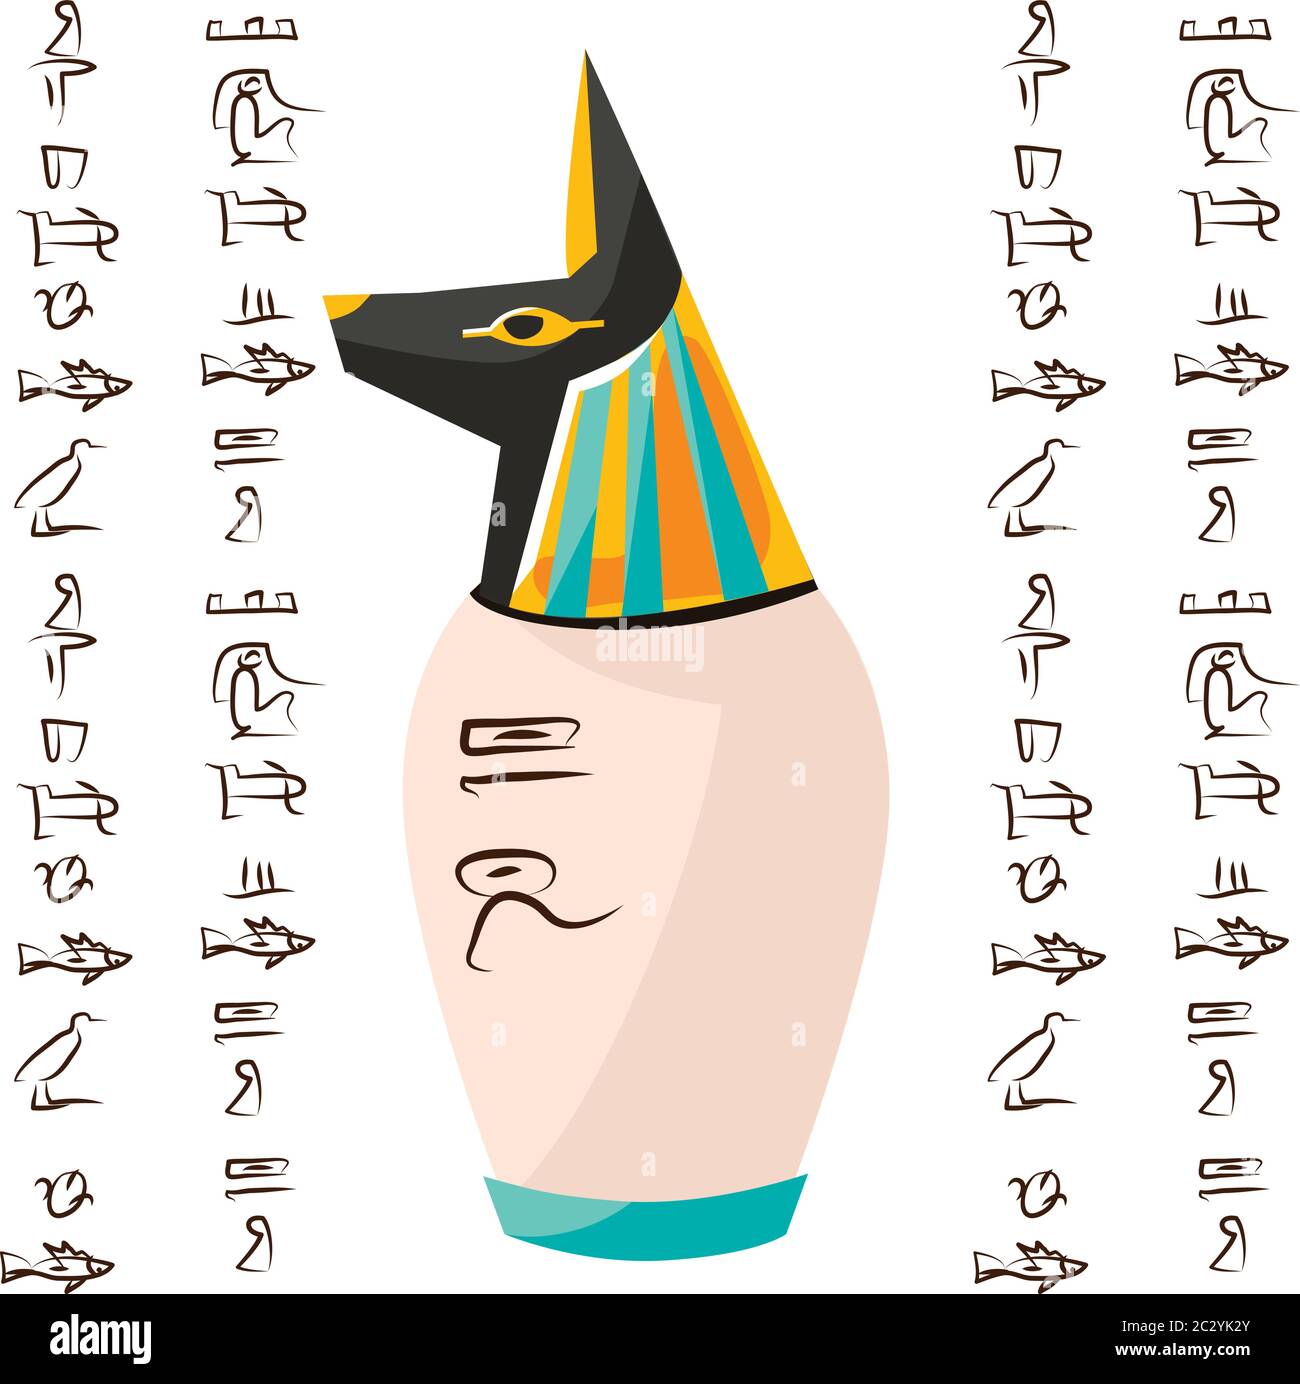 Alte ägyptische Ritual Vase mit Hund, Schakal Kopf und Hieroglyphen Cartoons Vektor-Illustration. Dekorative Urne für Opfer an gott Anubis oder Lagerung Stock Vektor